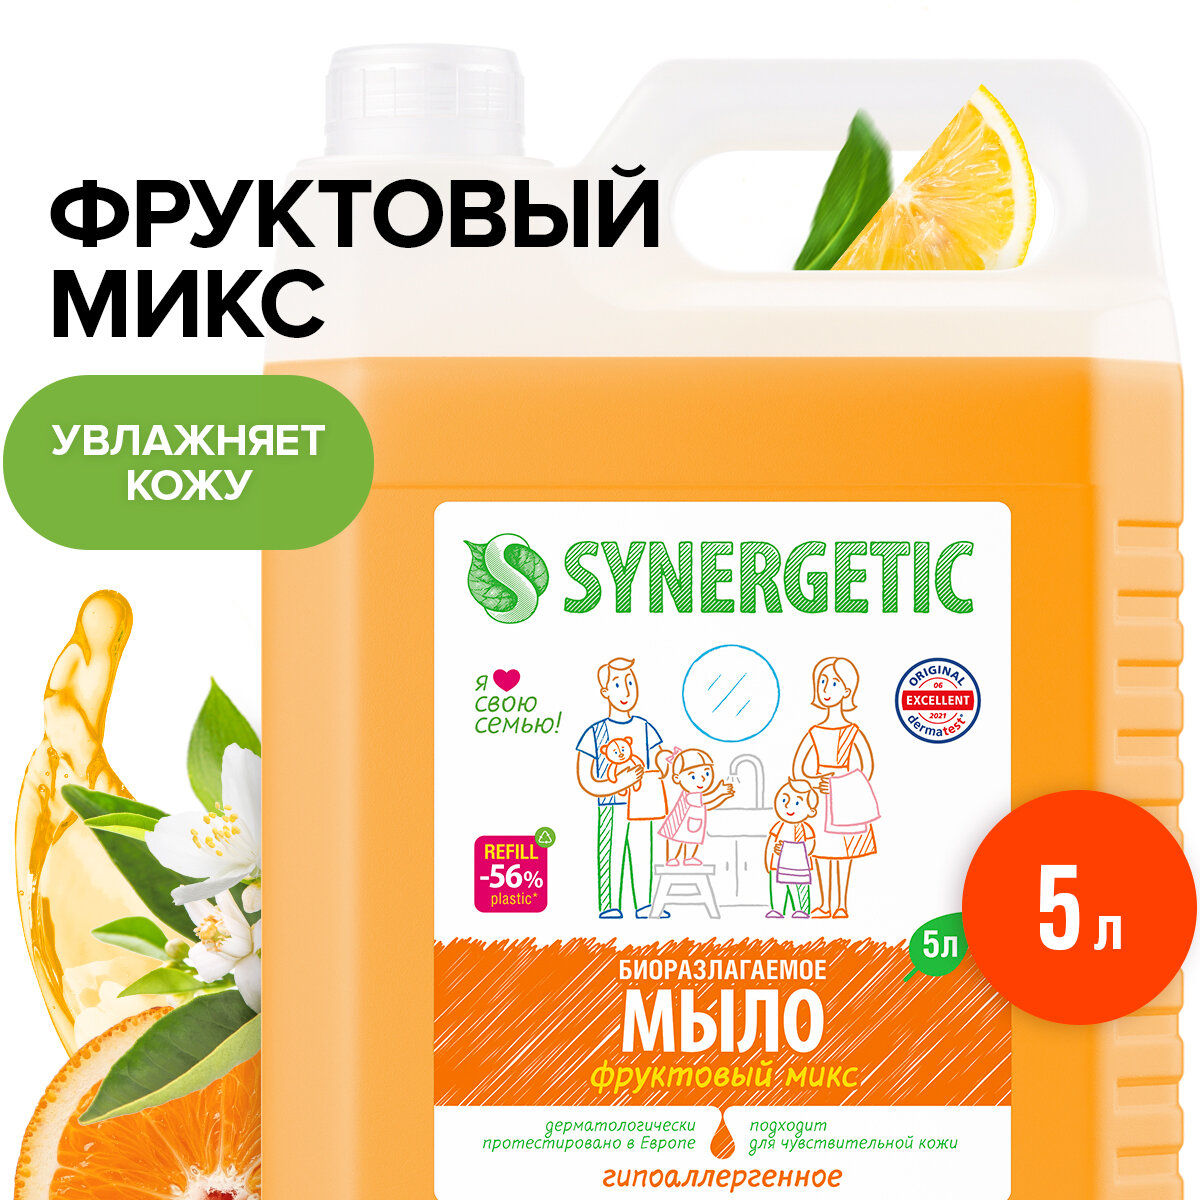 Жидкое мыло SYNERGETIC "Фруктовый микс" с эффектом увлажнения, гипоаллергенное, 5л (литров)